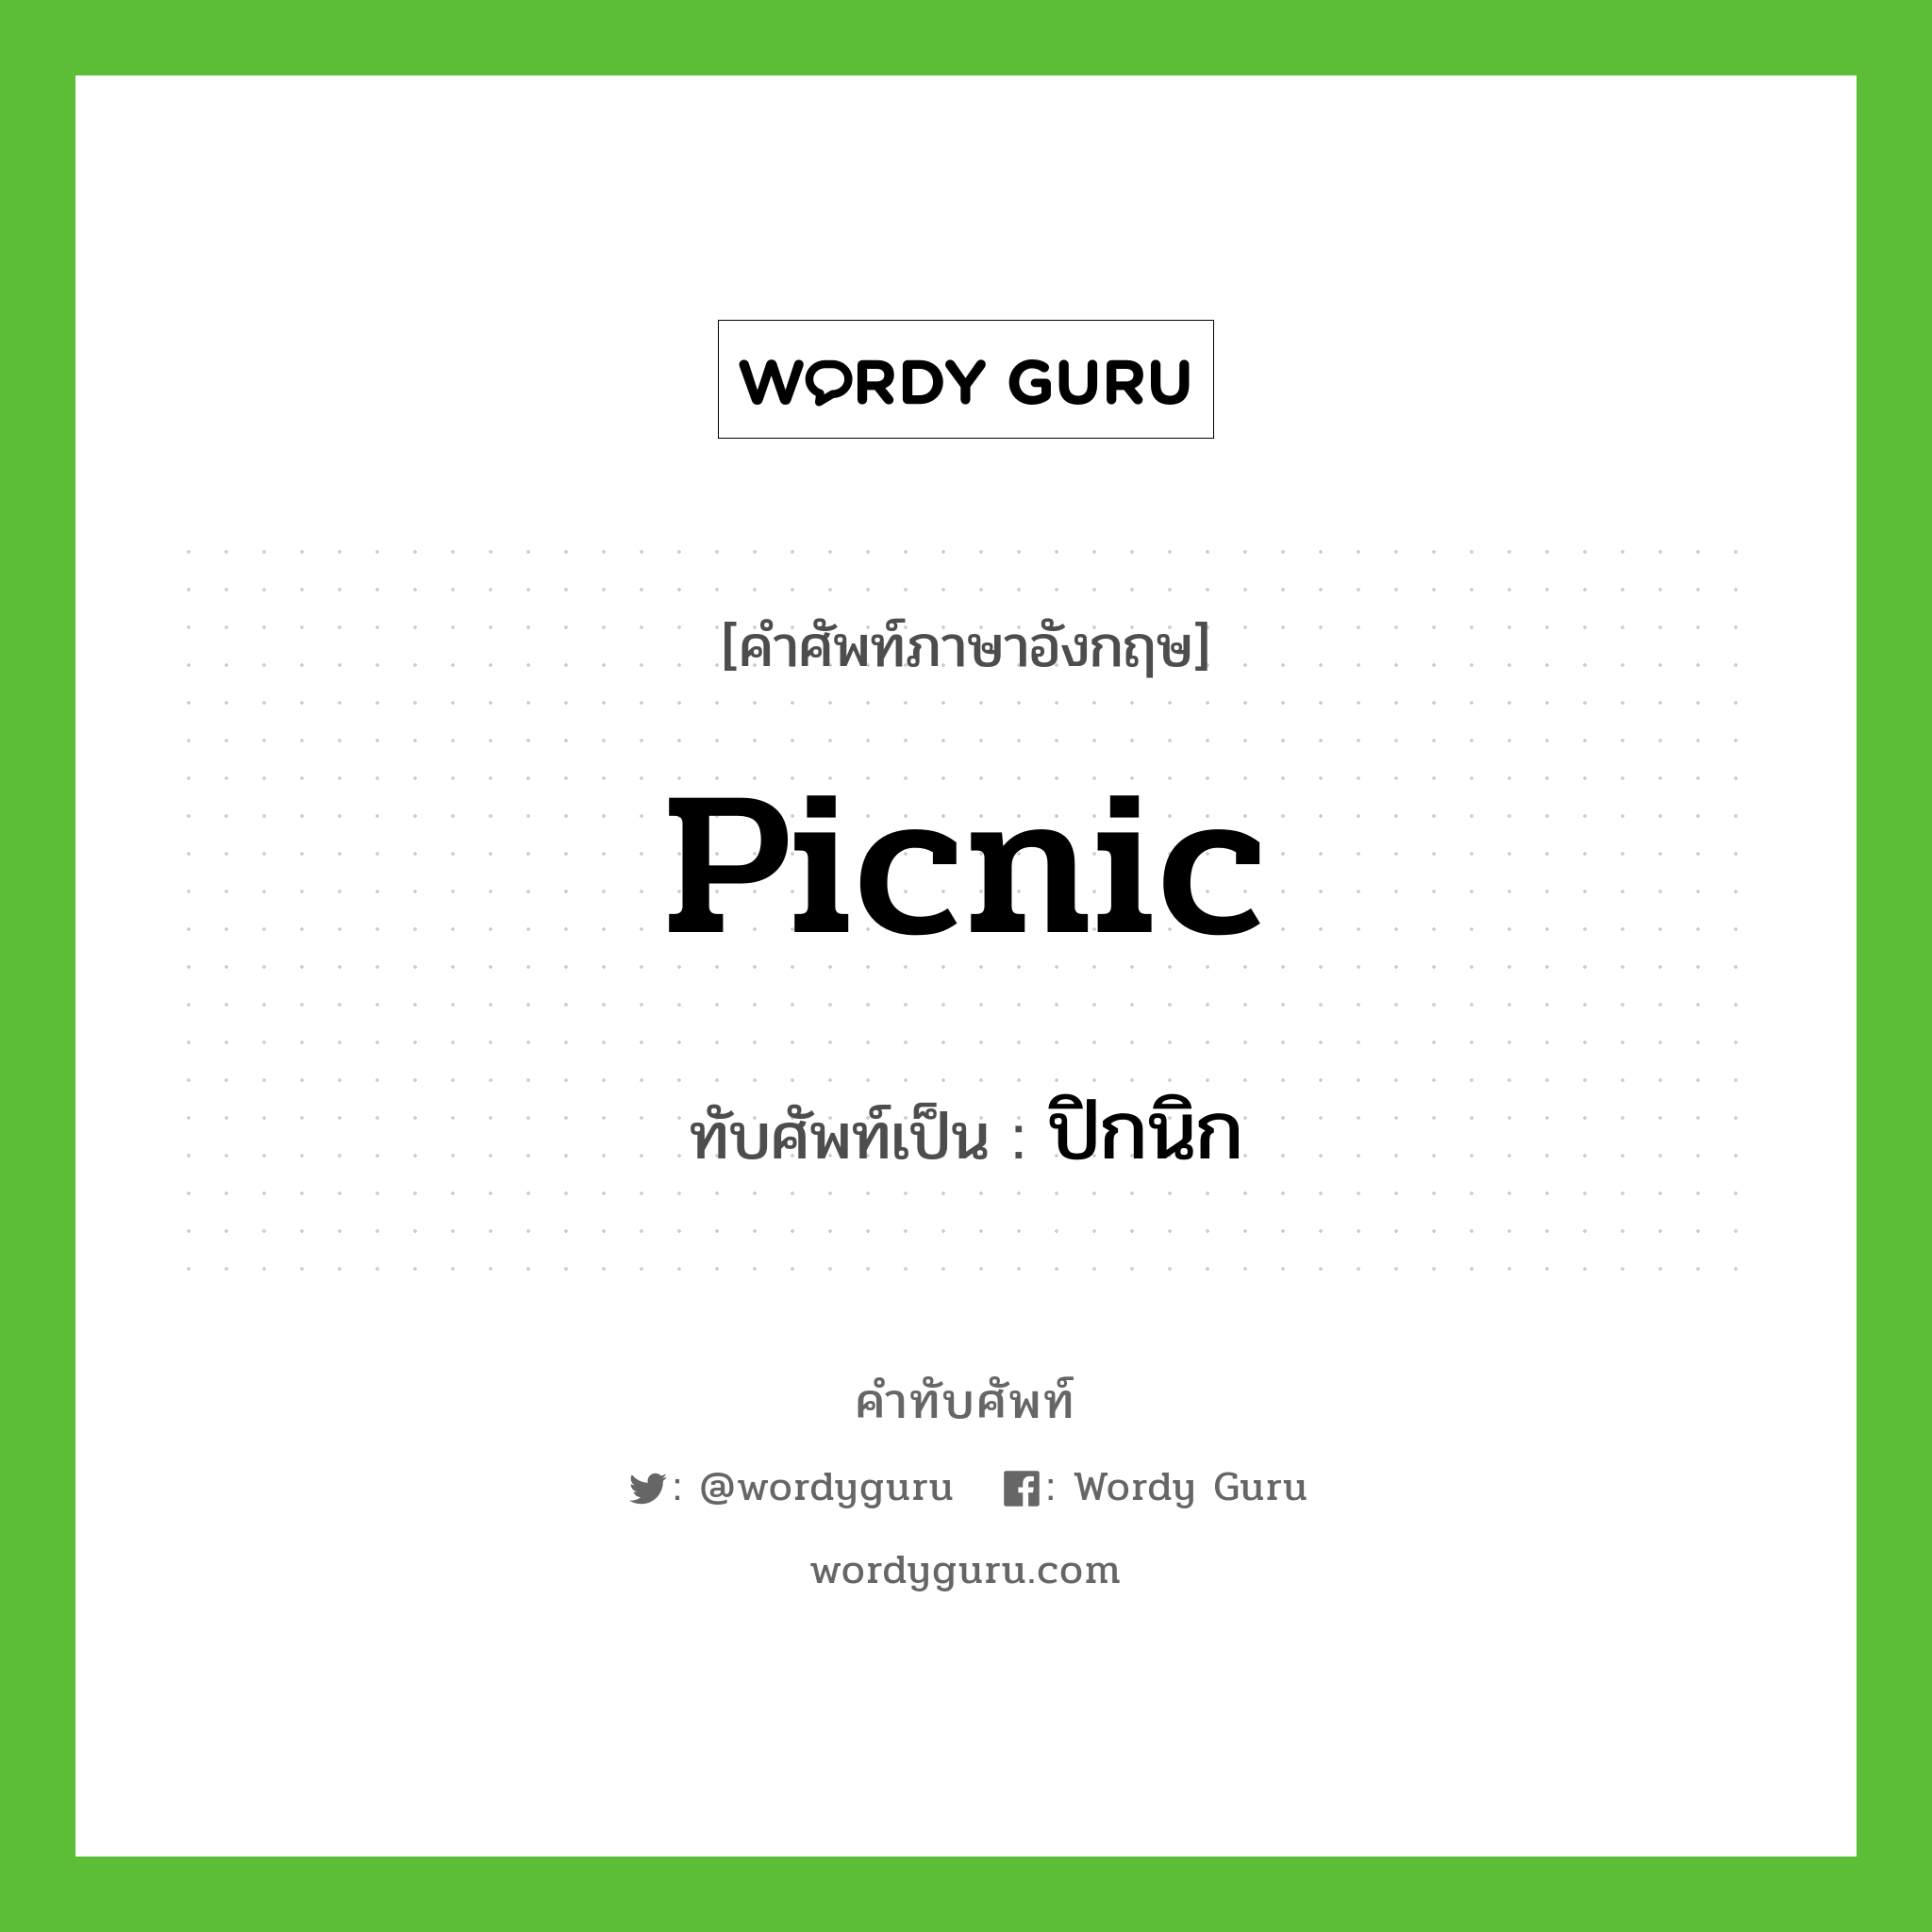 picnic เขียนเป็นคำไทยว่าอะไร?, คำศัพท์ภาษาอังกฤษ picnic ทับศัพท์เป็น ปิกนิก